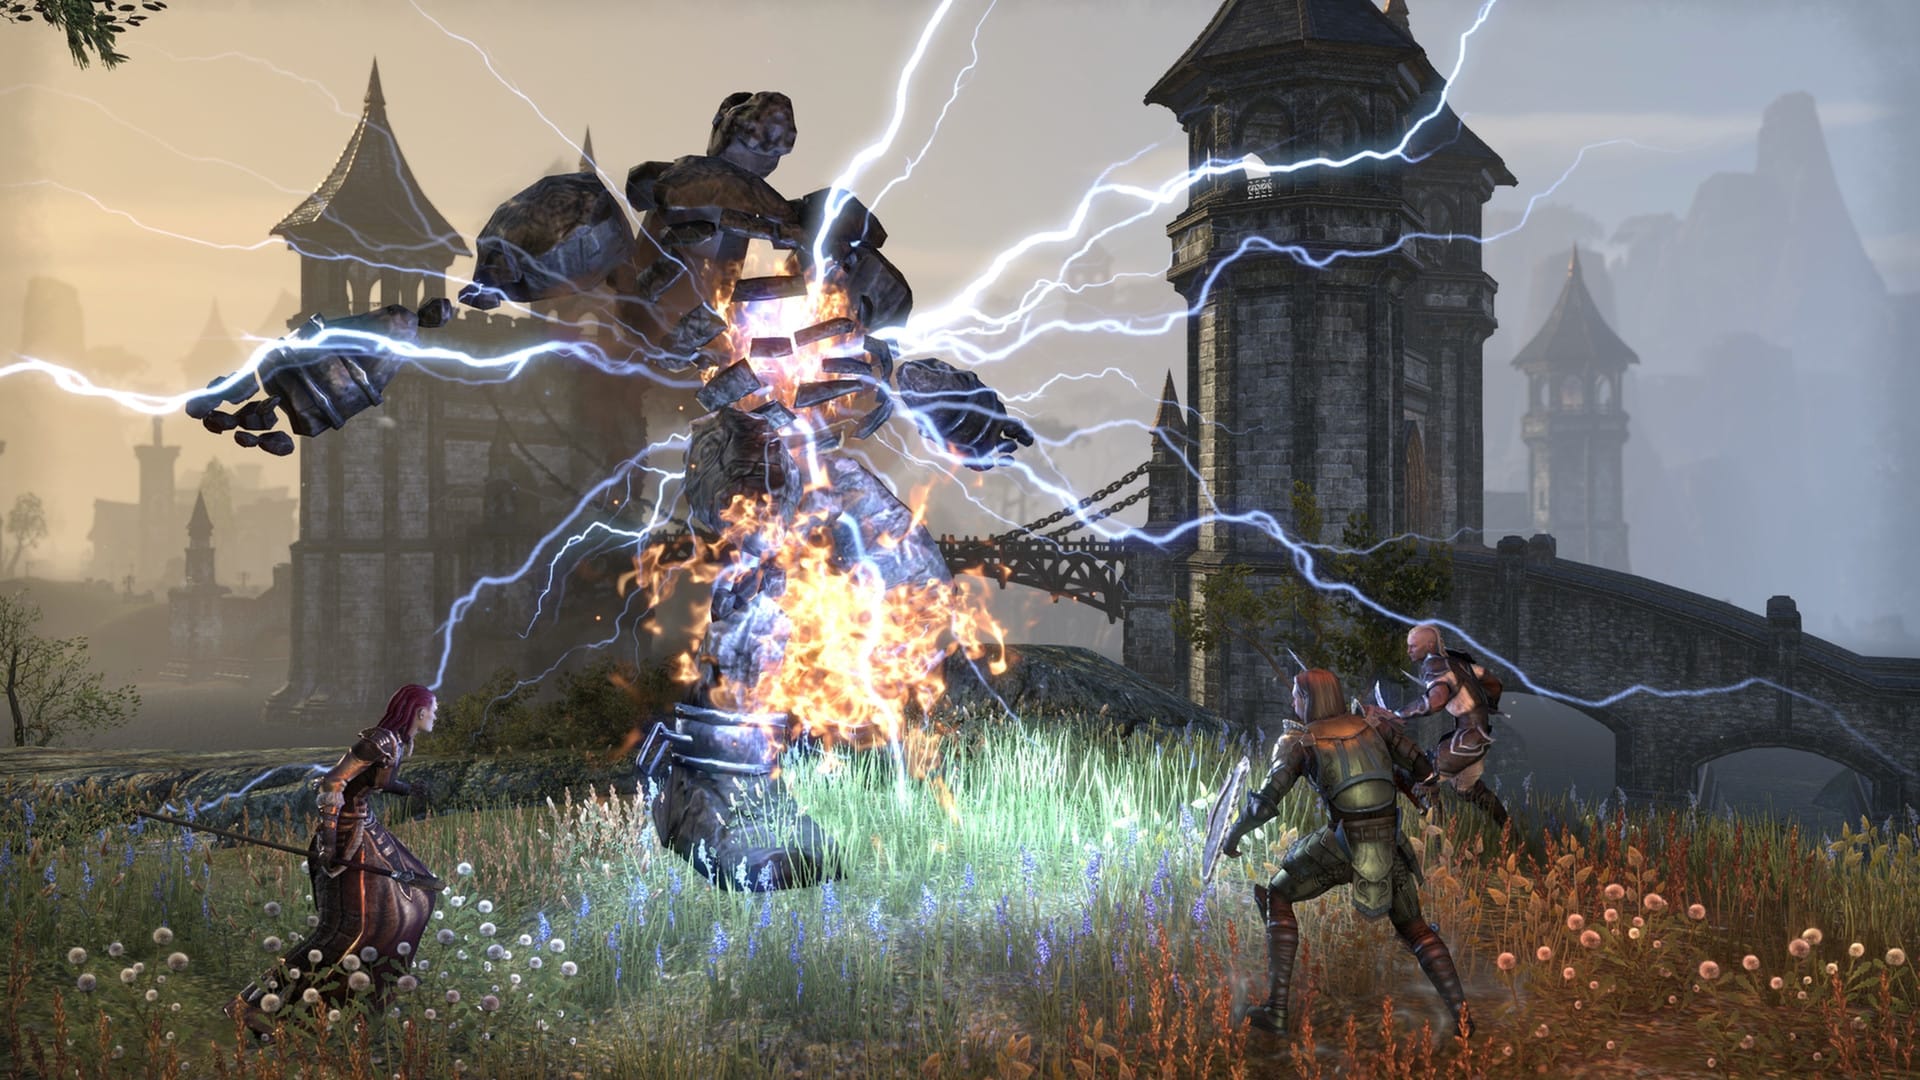 En İyi MMORPG Oyunları: Elder Scrolls Online. Resim, büyük bir taş yaratığa karşı gelen üç karakterden oluşan bir partiyi gösteriyor